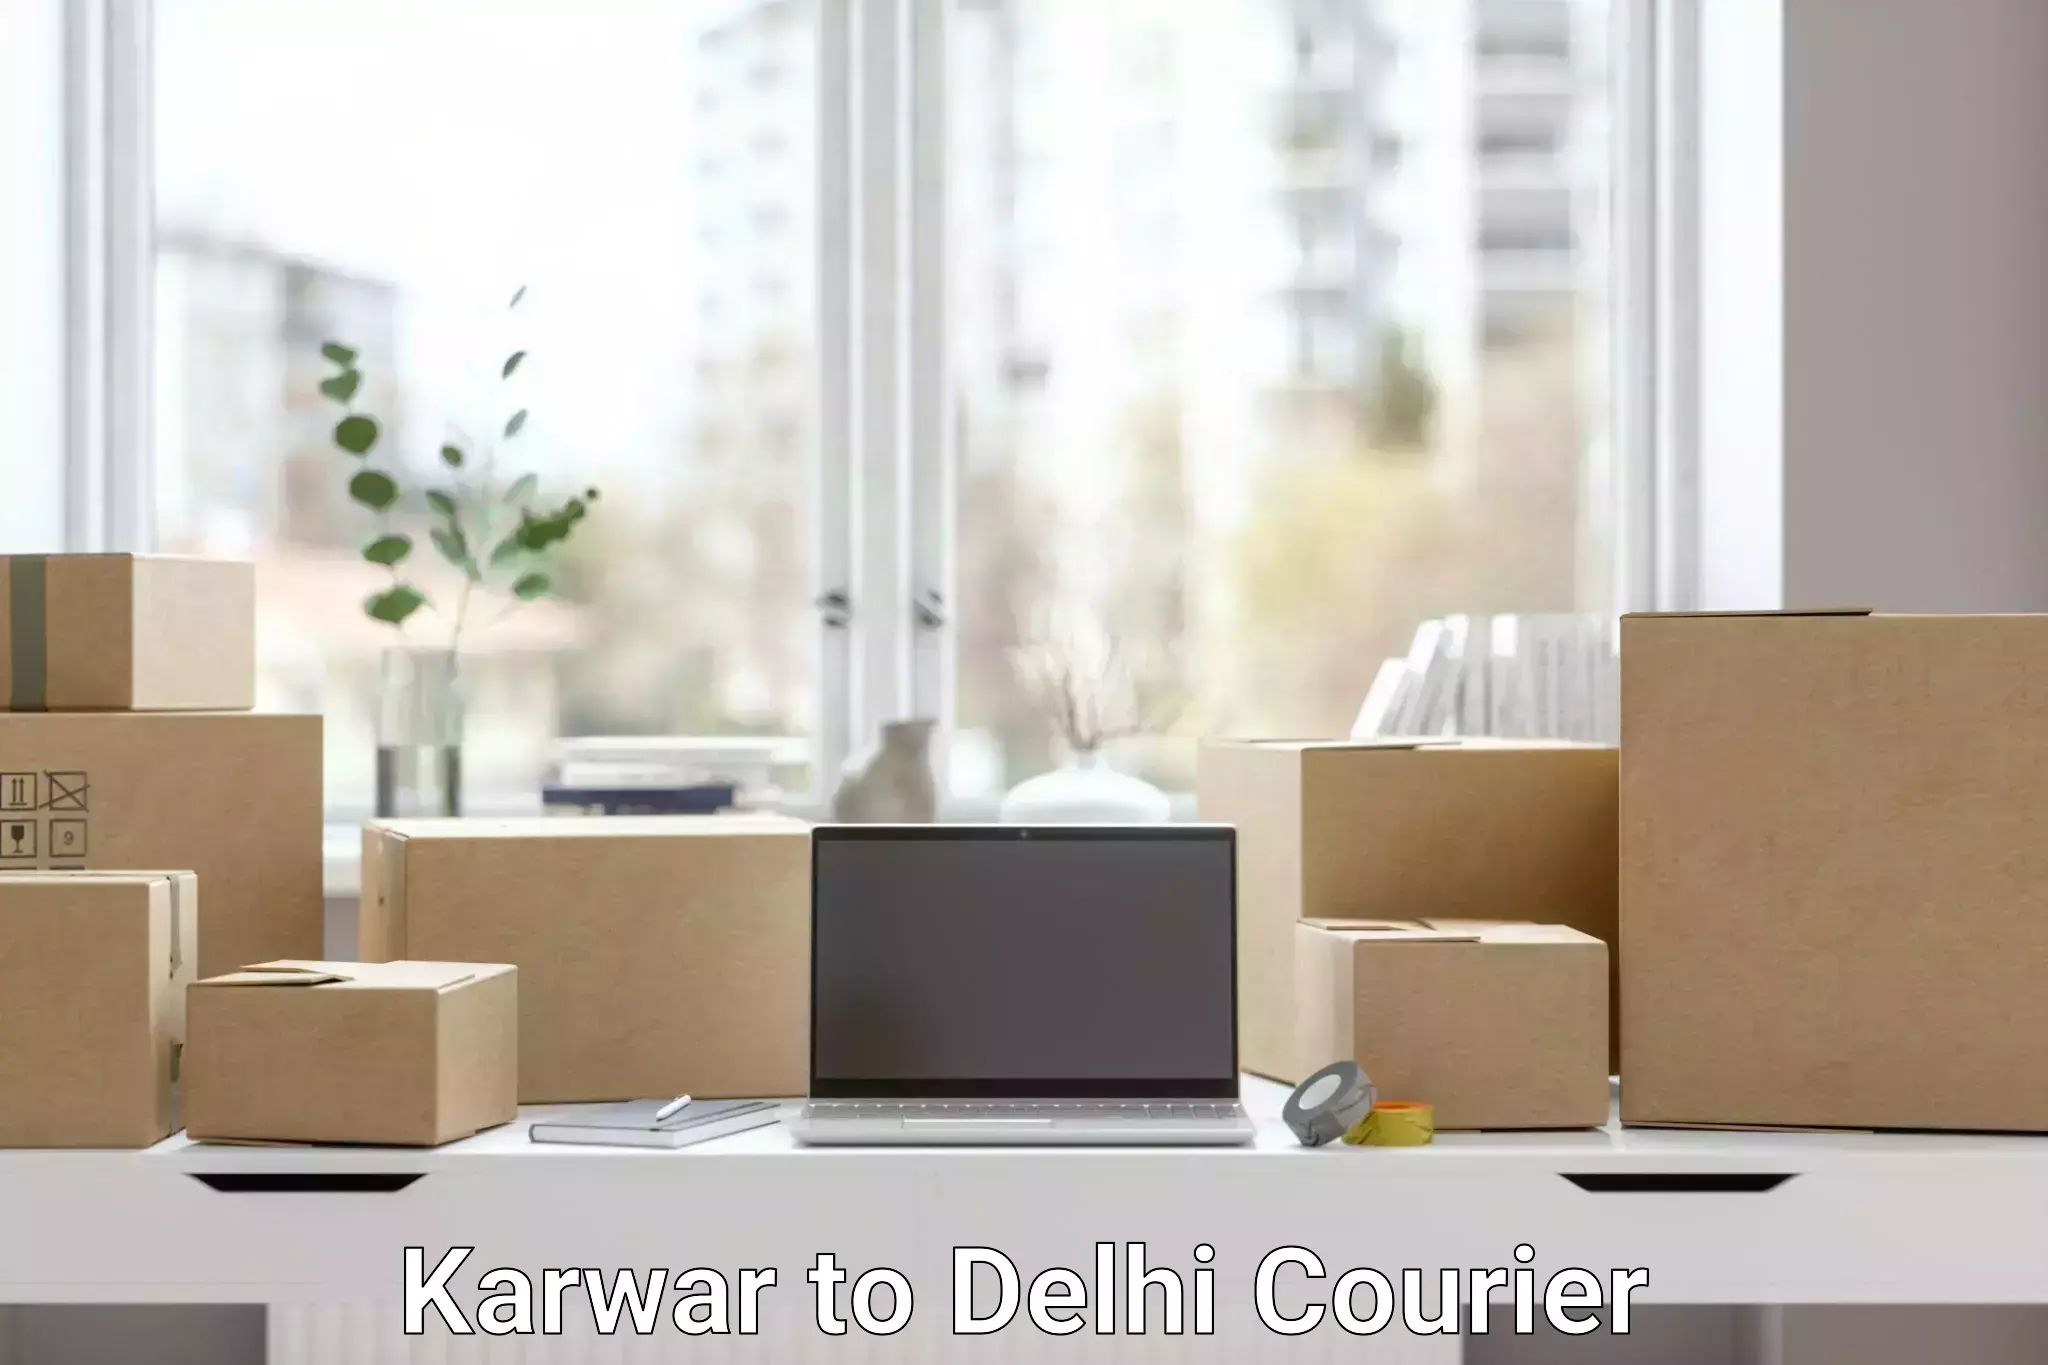 Customer-centric shipping Karwar to Jhilmil